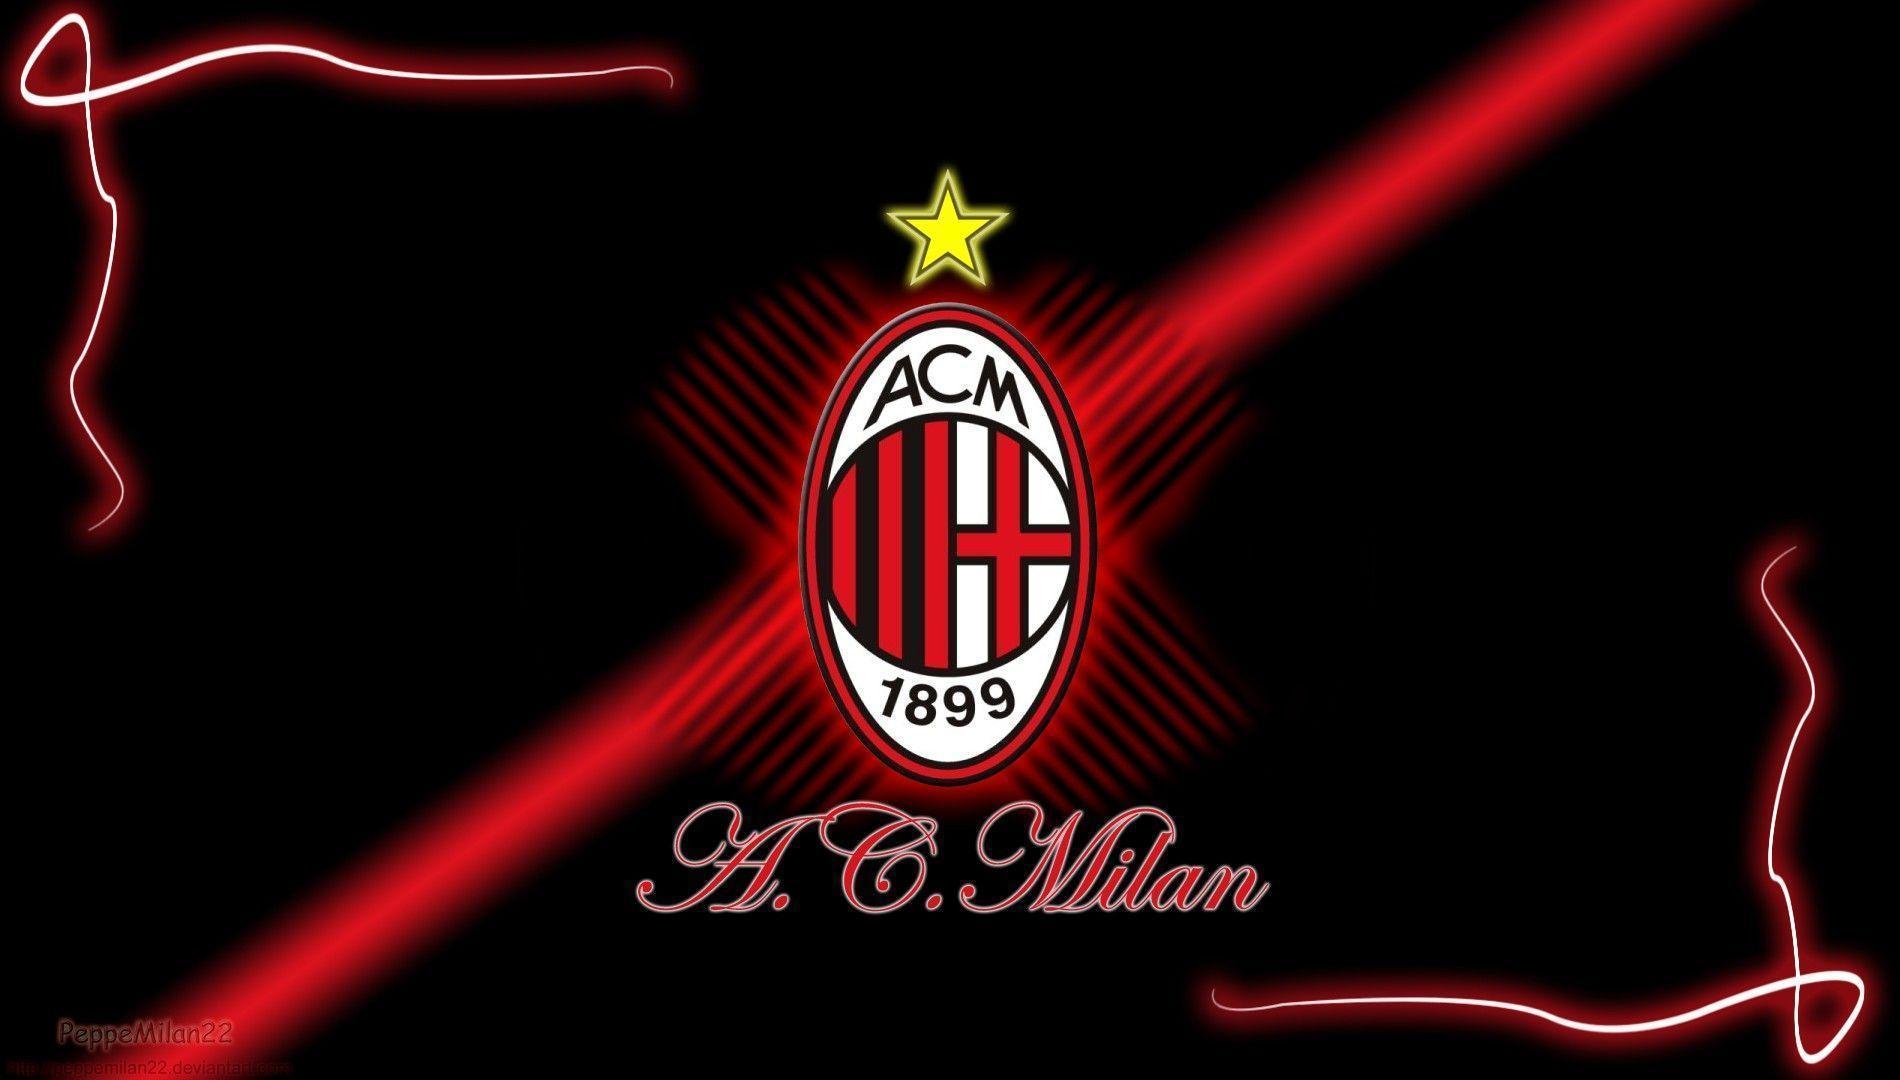 AC Milan 2014 Wallpaper